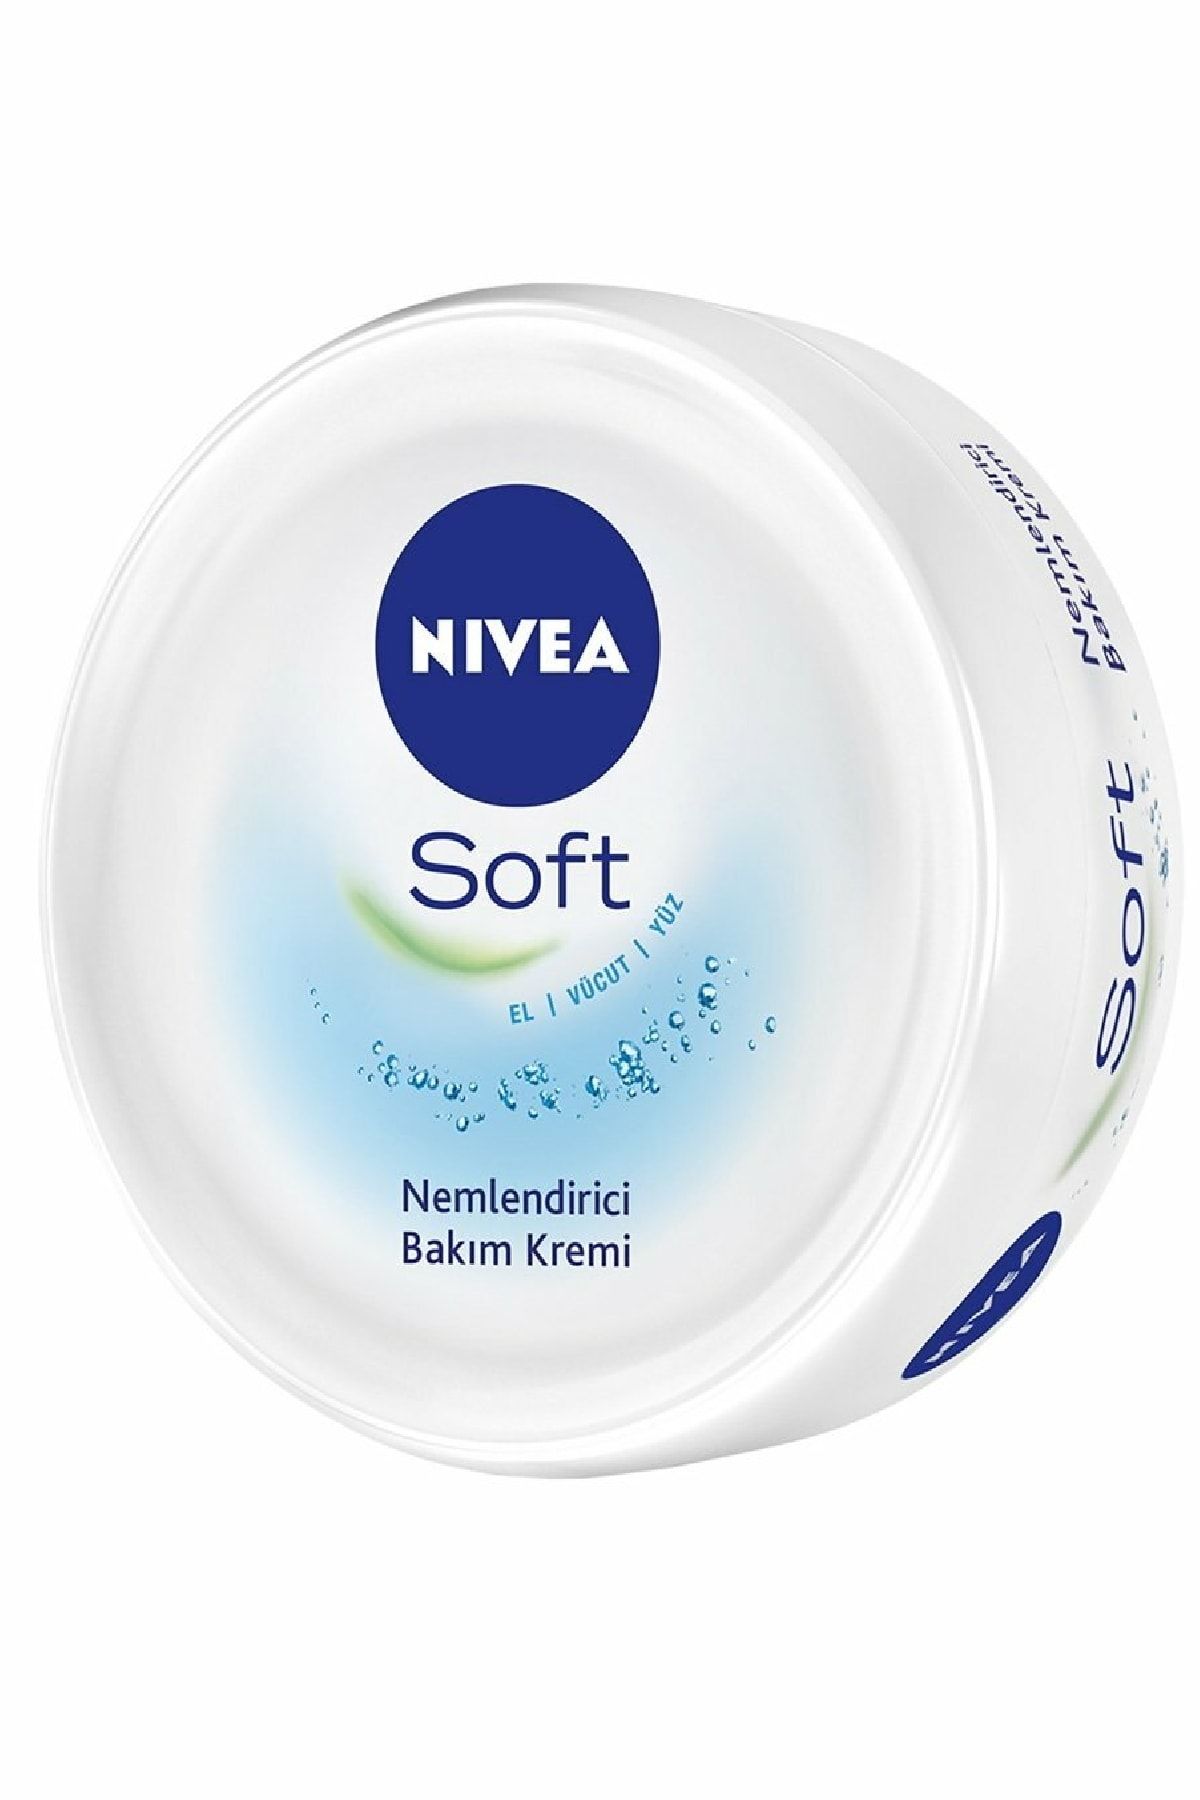 NIVEA Soft Nemlendirici Bakım Kremi 100 ml